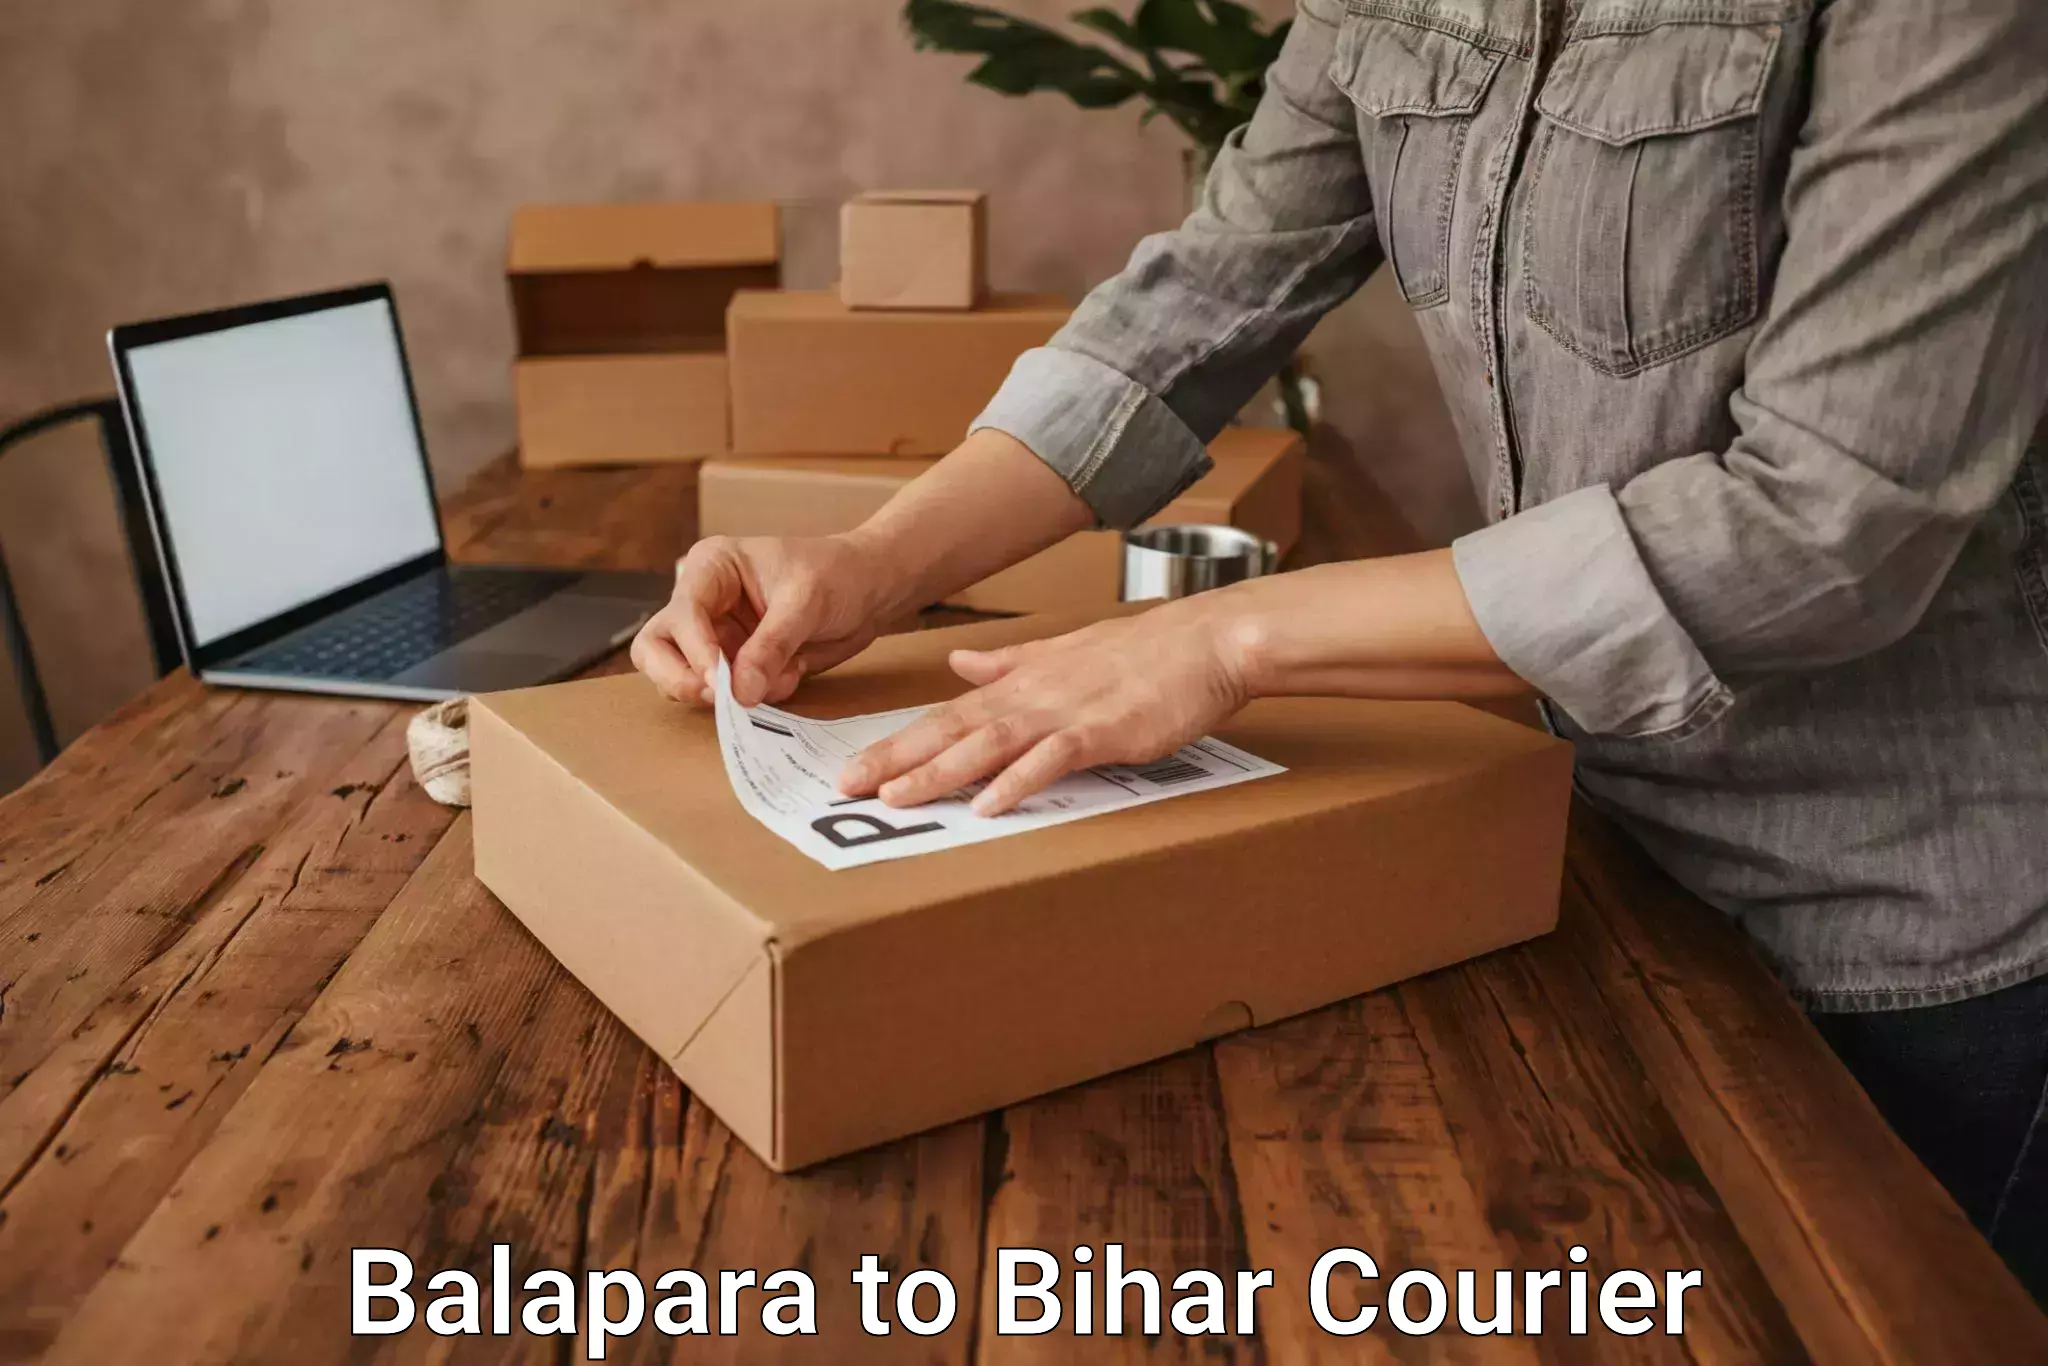 Urgent courier needs Balapara to Bettiah